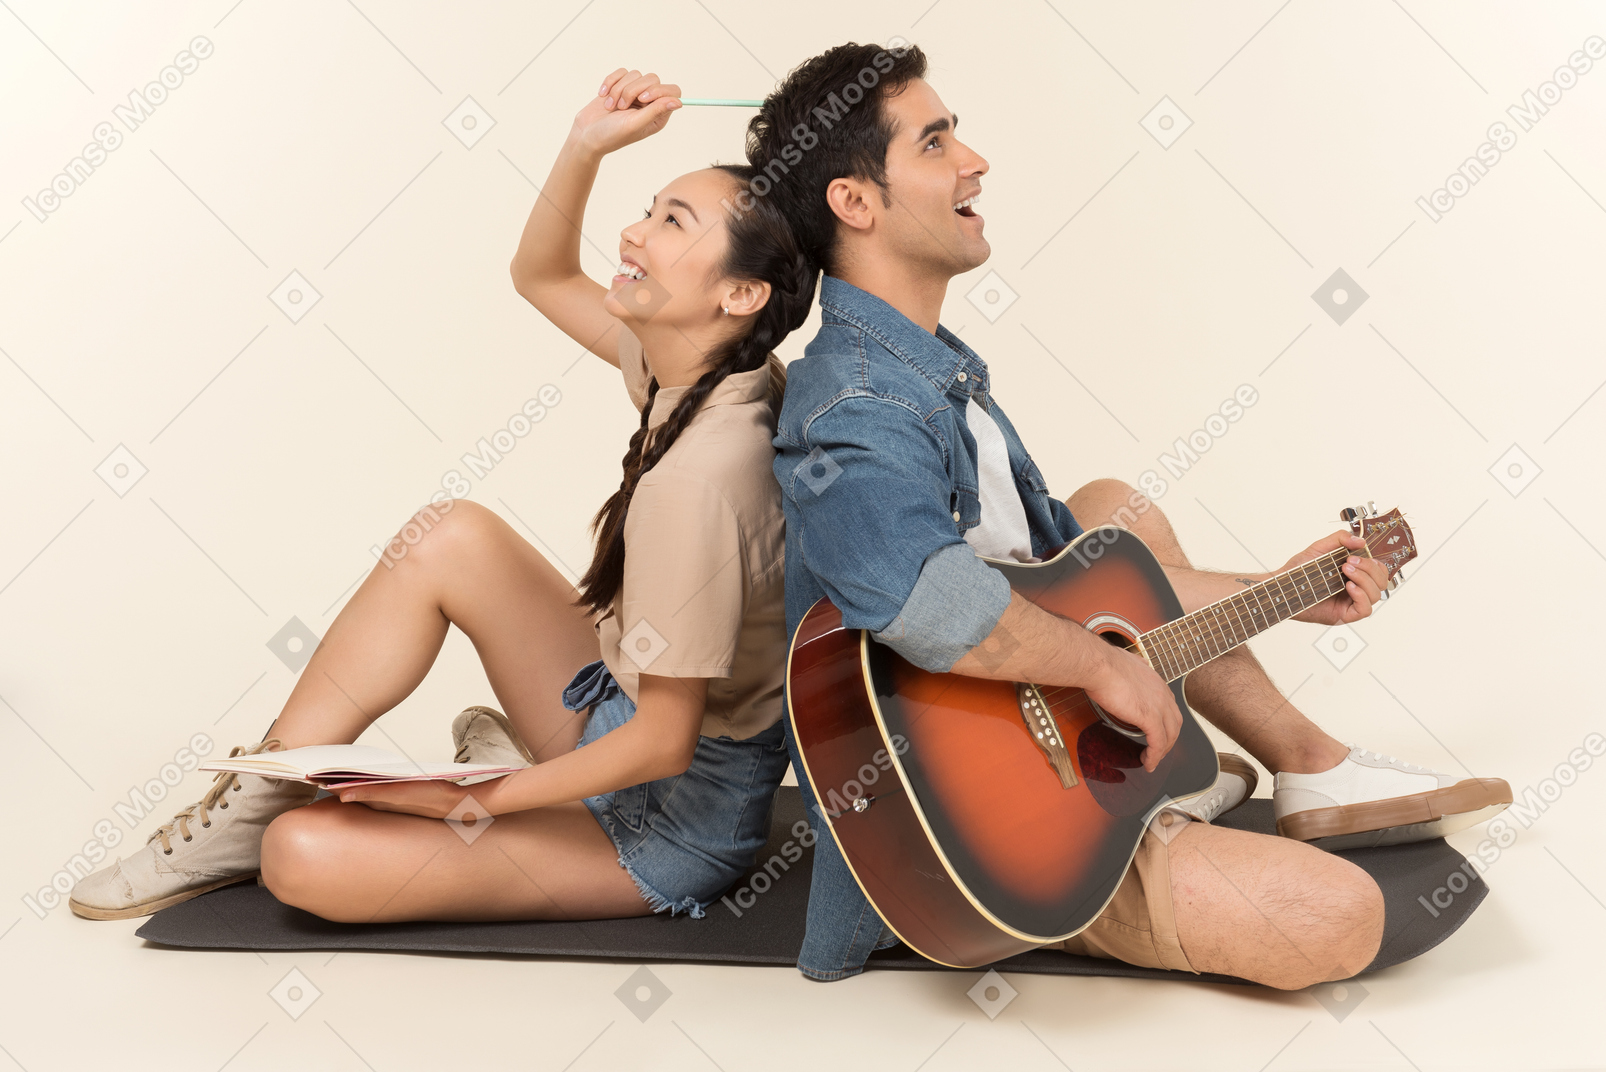 Смеющаяся межрасовая пара сидит спина к спине и мужчина играет на гитаре